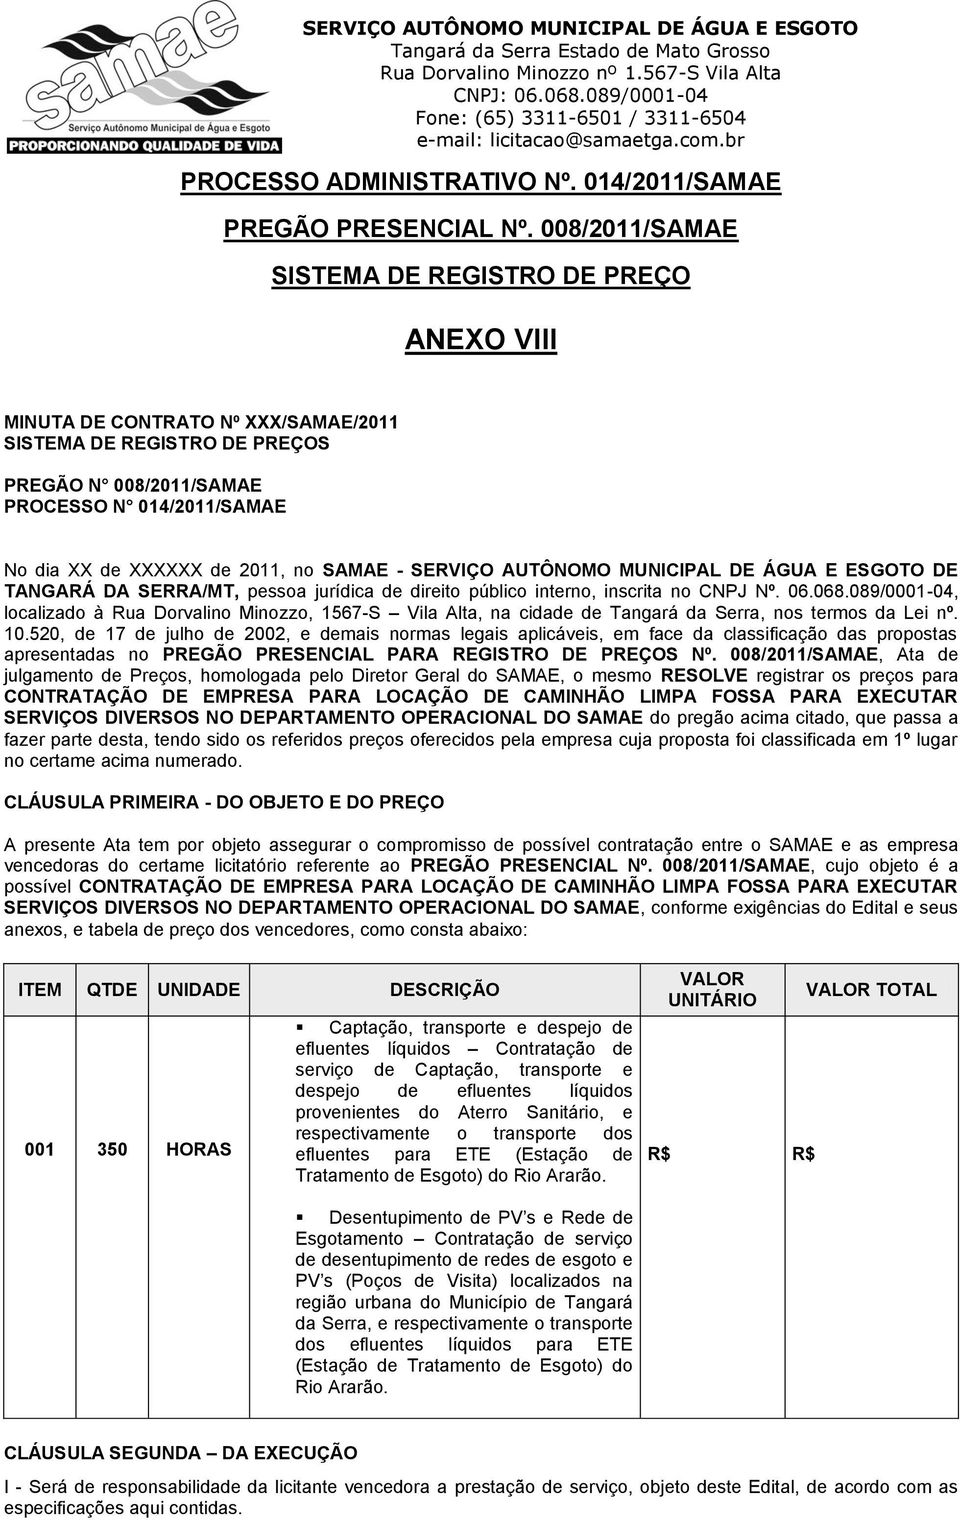 2011, no SAMAE - SERVIÇO AUTÔNOMO MUNICIPAL DE ÁGUA E ESGOTO DE TANGARÁ DA SERRA/MT, pessoa jurídica de direito público interno, inscrita no CNPJ Nº. 06.068.